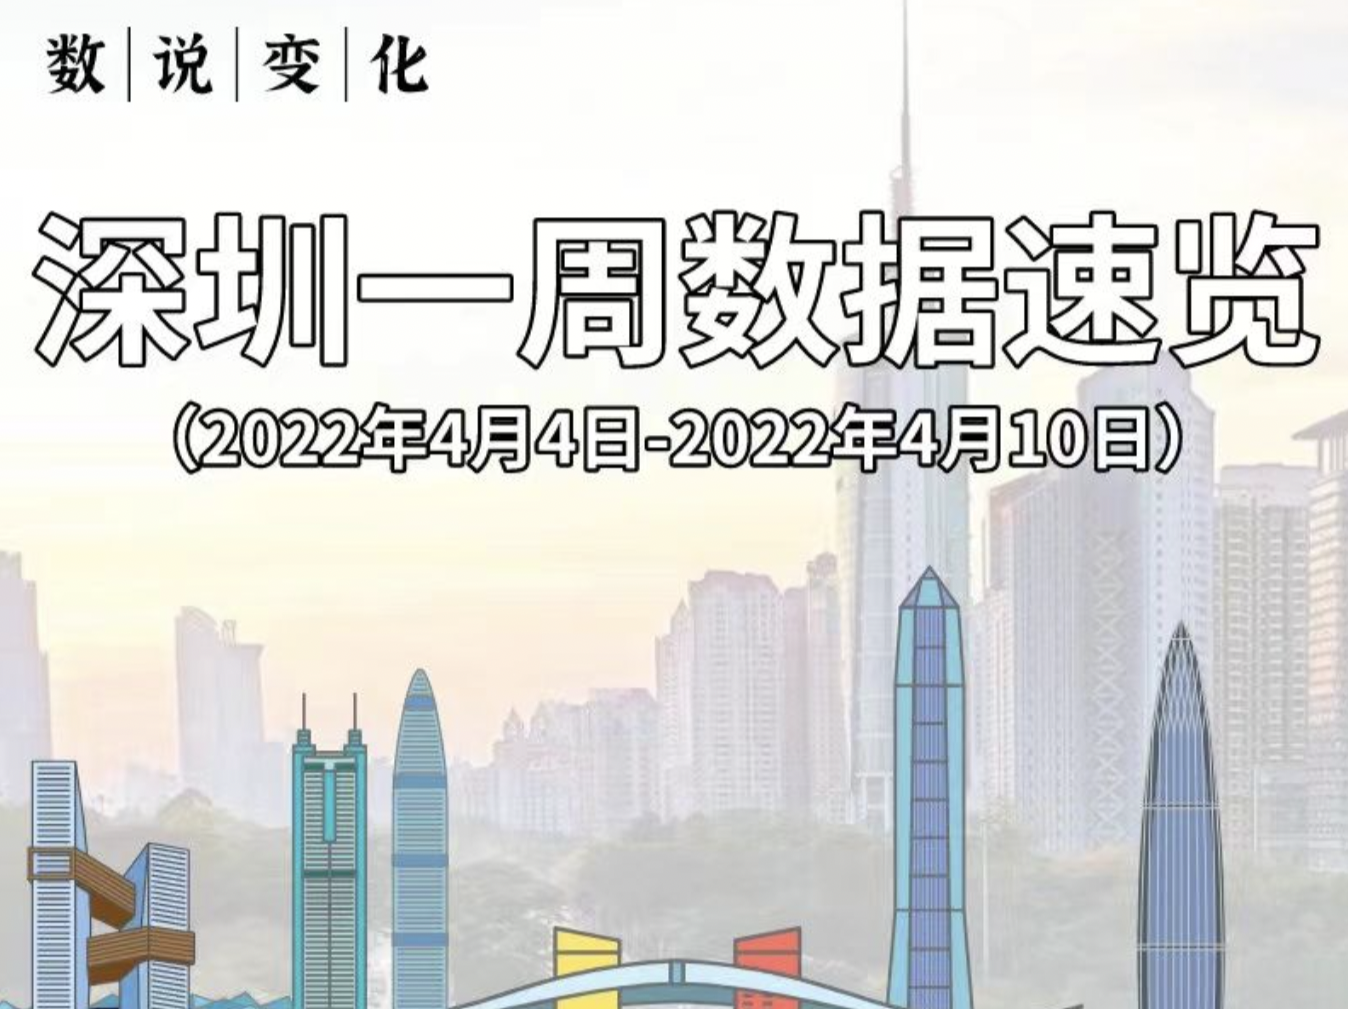 数说变化 | 深圳一周数据速览（2022年4月4日- 4月10日）